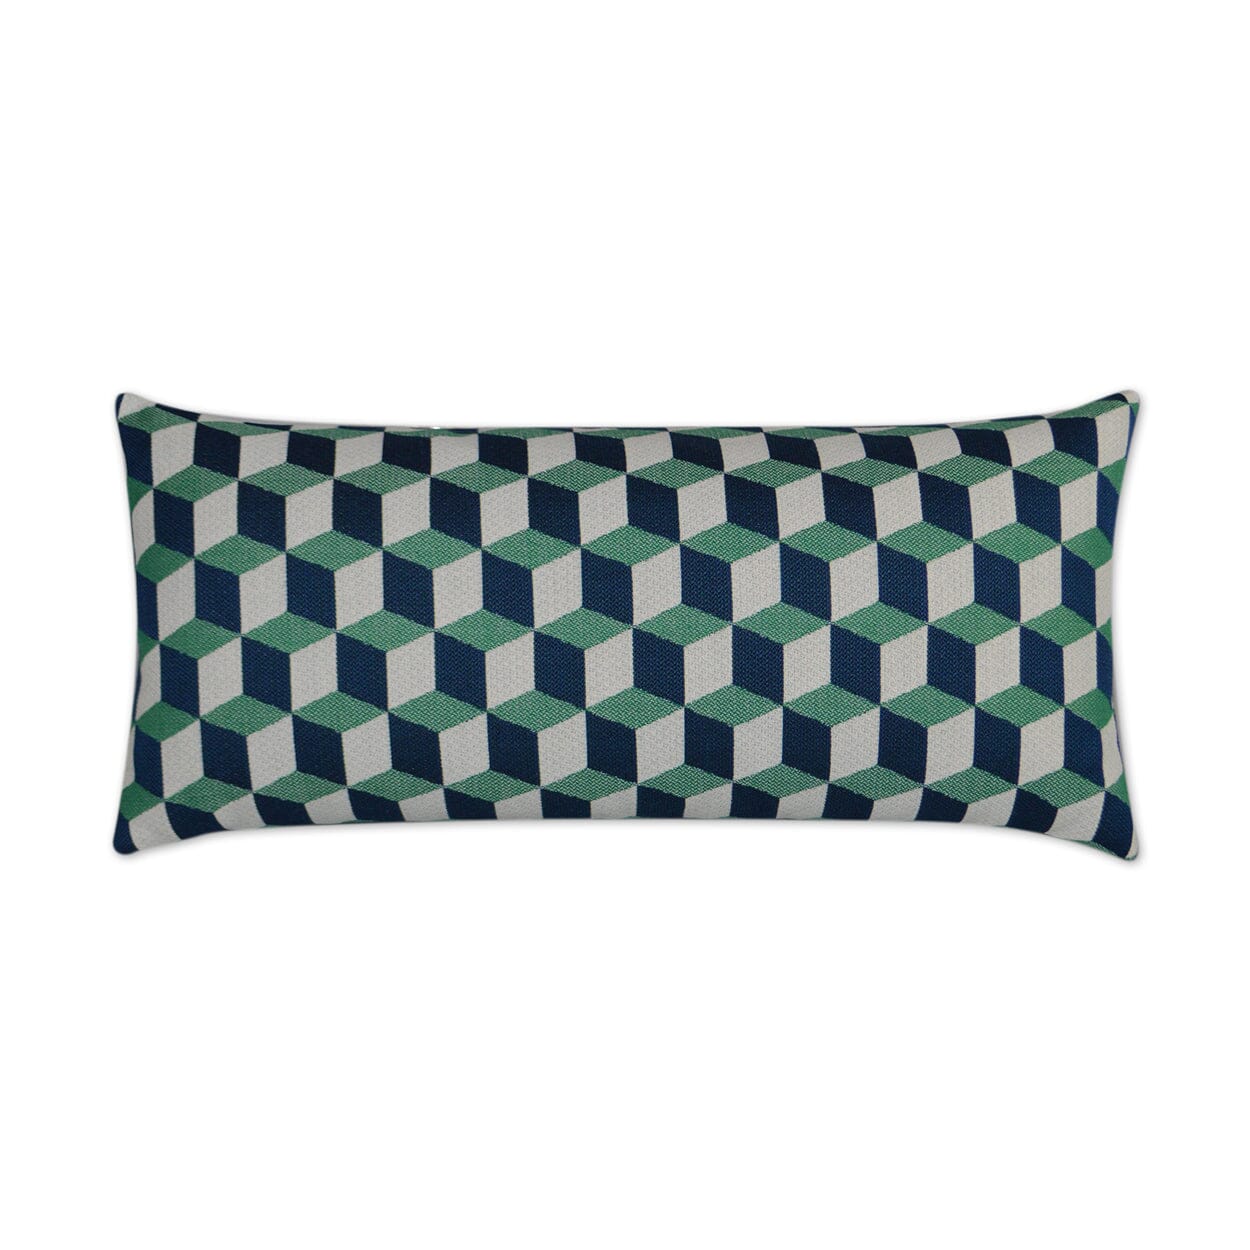 D.V. Kap 12" x 24" Outdoor Lumbar Pillow | Puzzle Emerald Pillows D.V Kap Outdoor